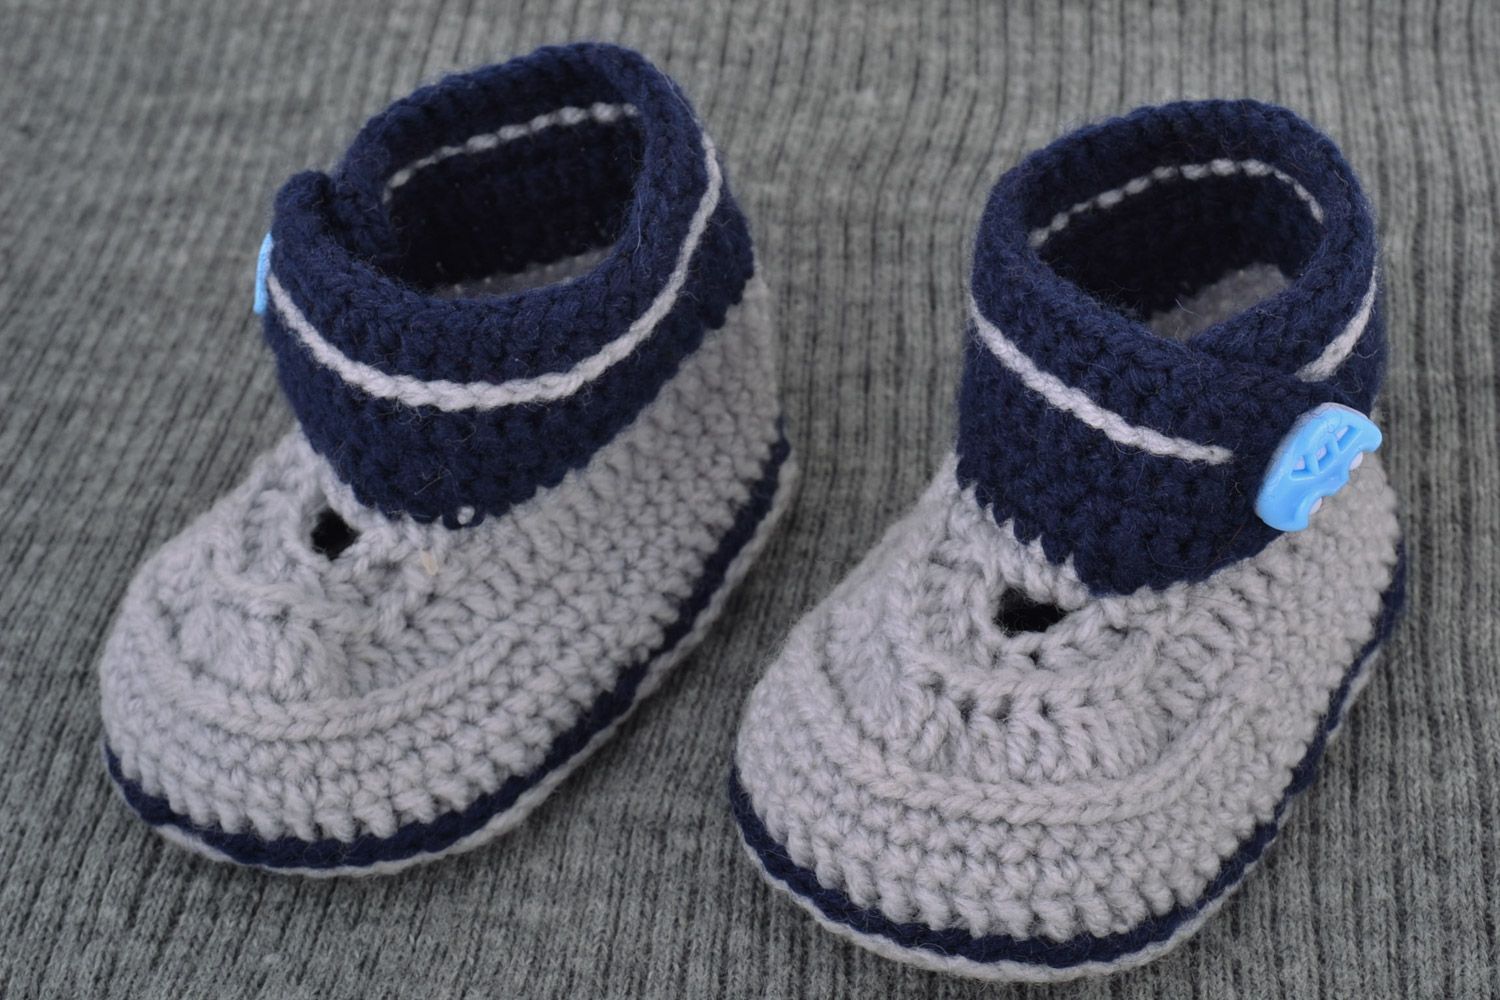 Пинетки для детей в виде ботиночек ручной работы из шерсти серо-синие фото 1